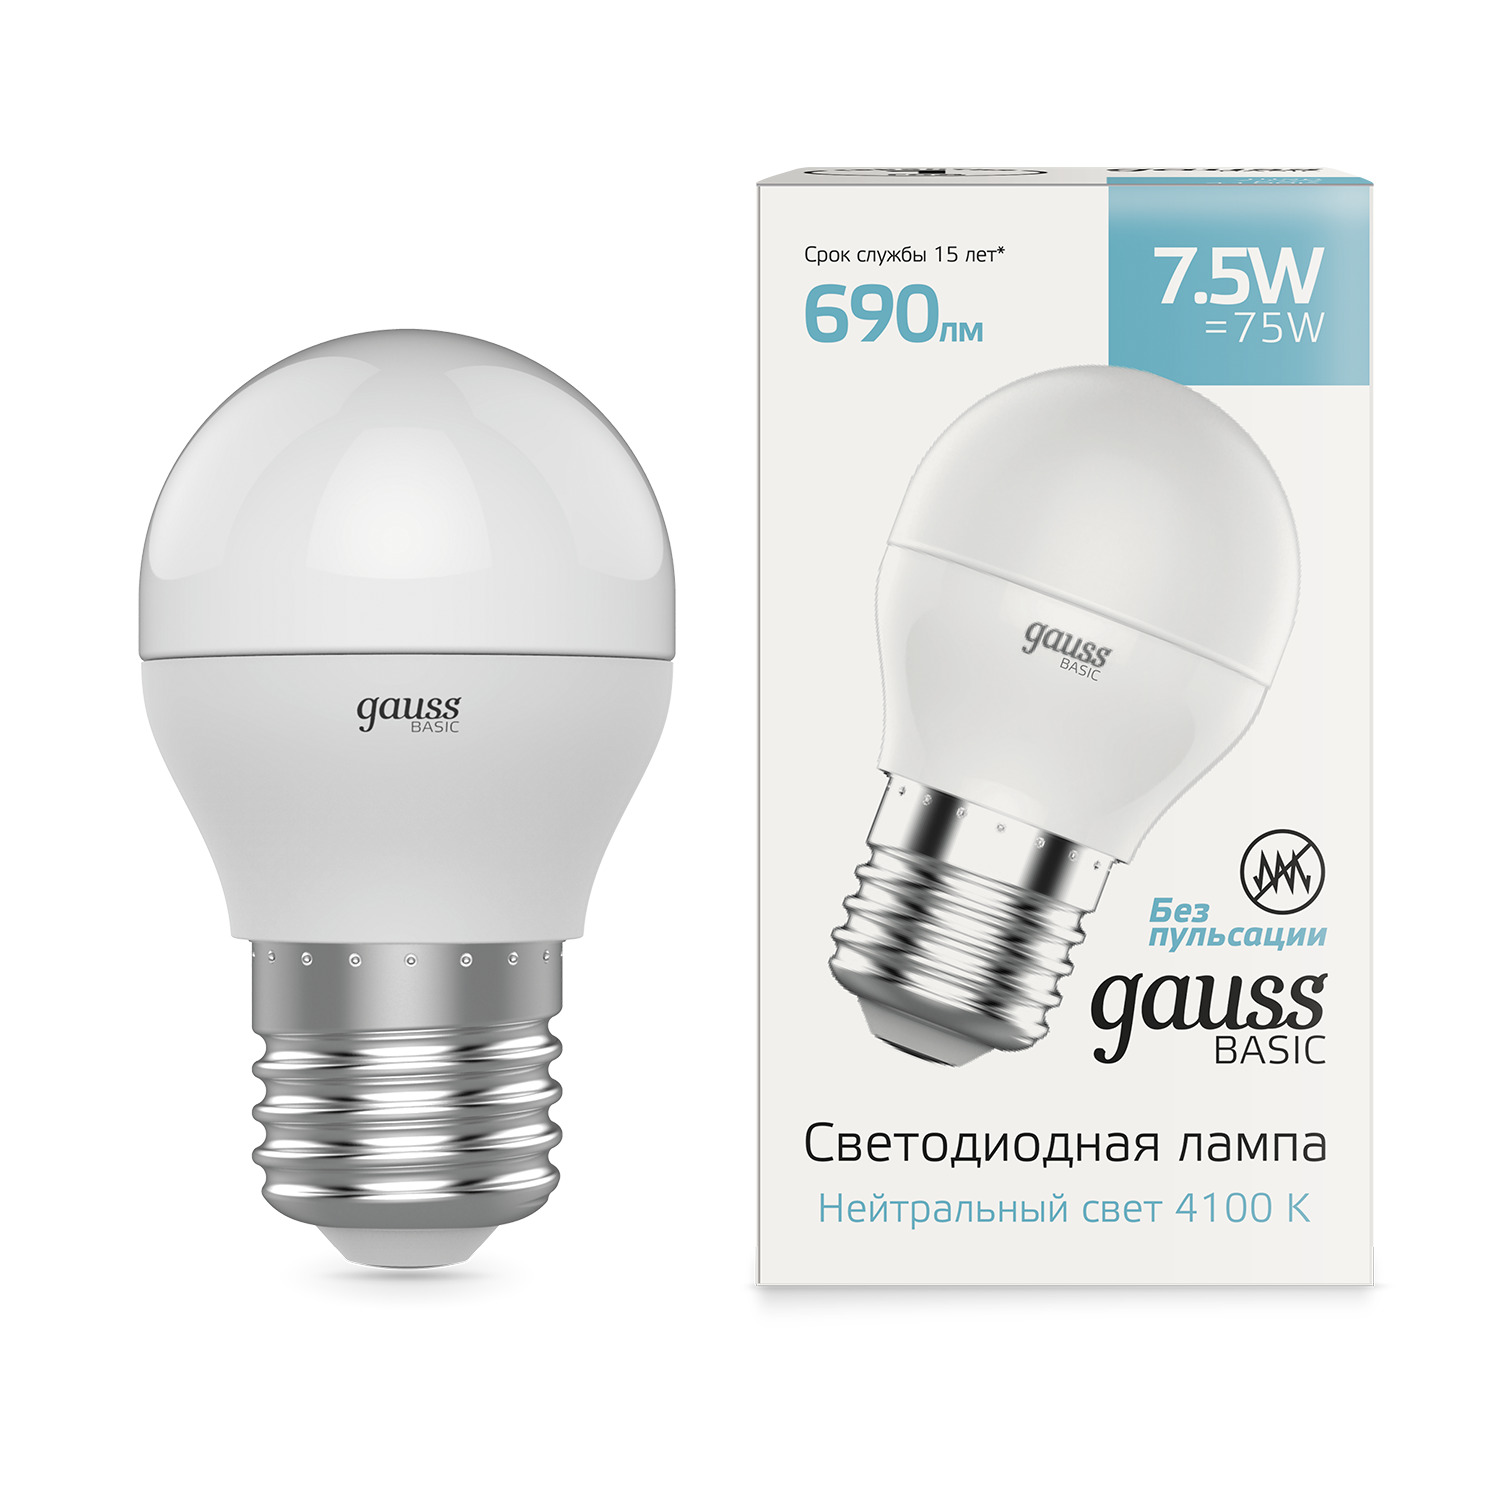 Лампа Gauss Basic Шар 7,5W 690lm 4100K E27 LED, 10 шт